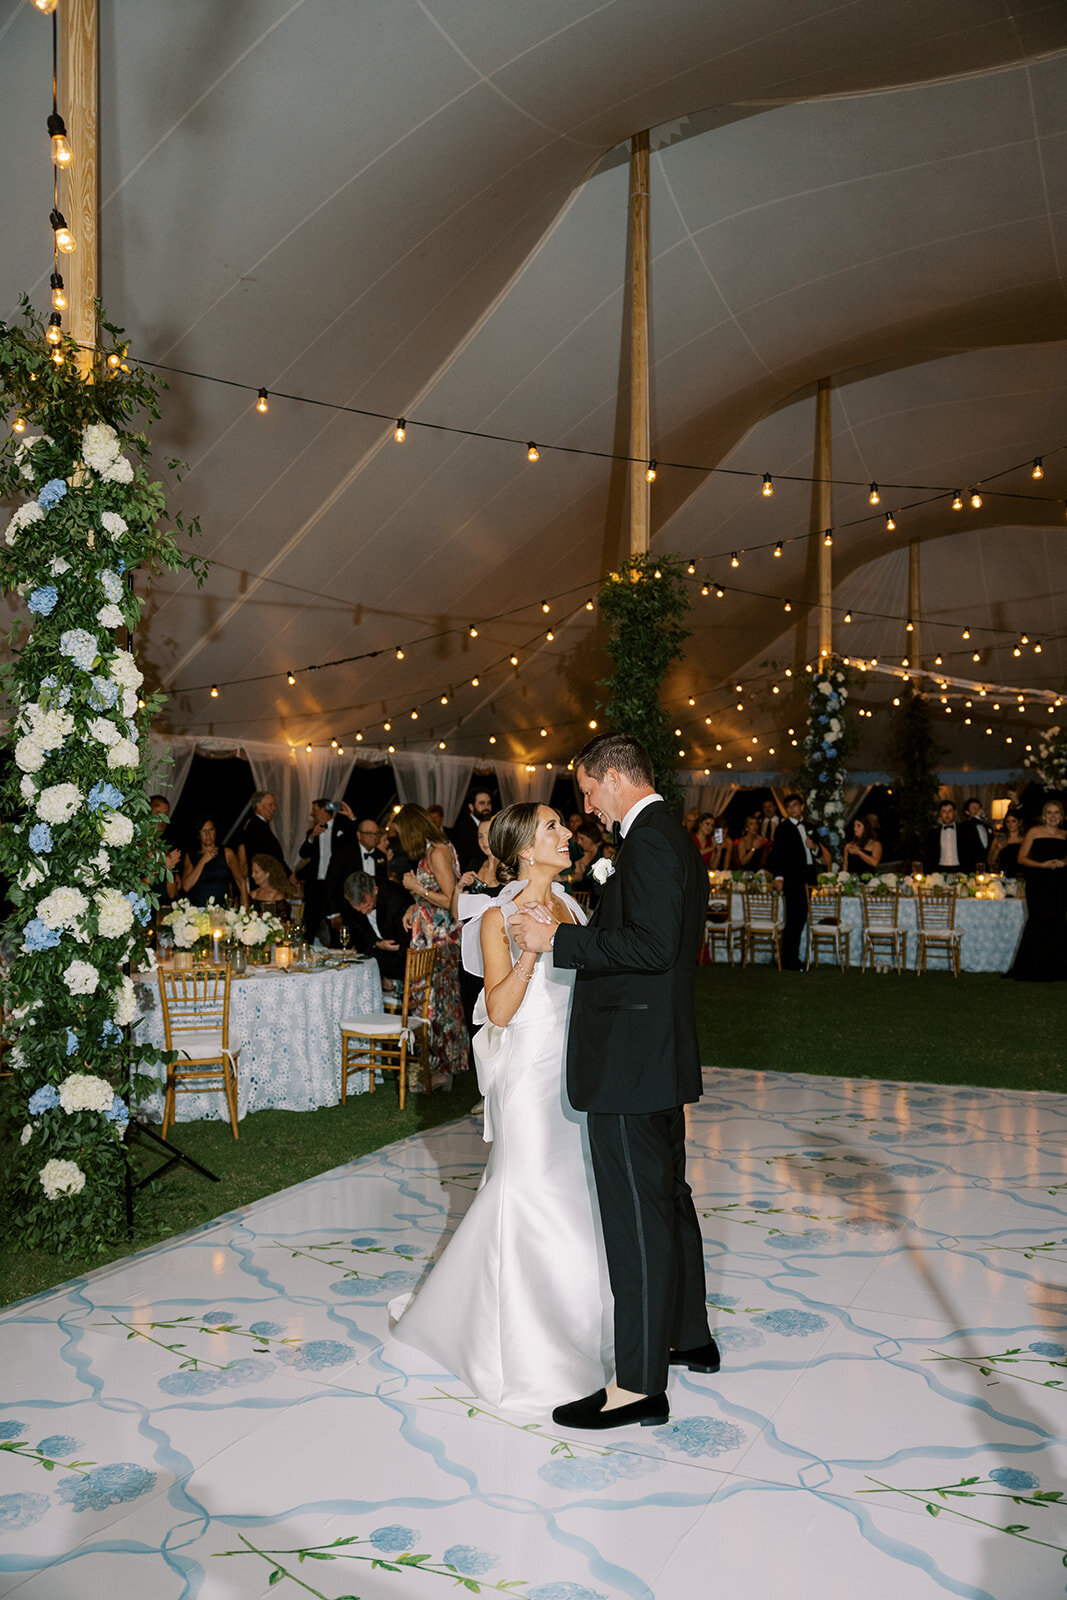 CORNELIA ZAISS PHOTOGRAPHY ANNIE + HARTWELL WEDDING SNEAKS  125_websize (1)